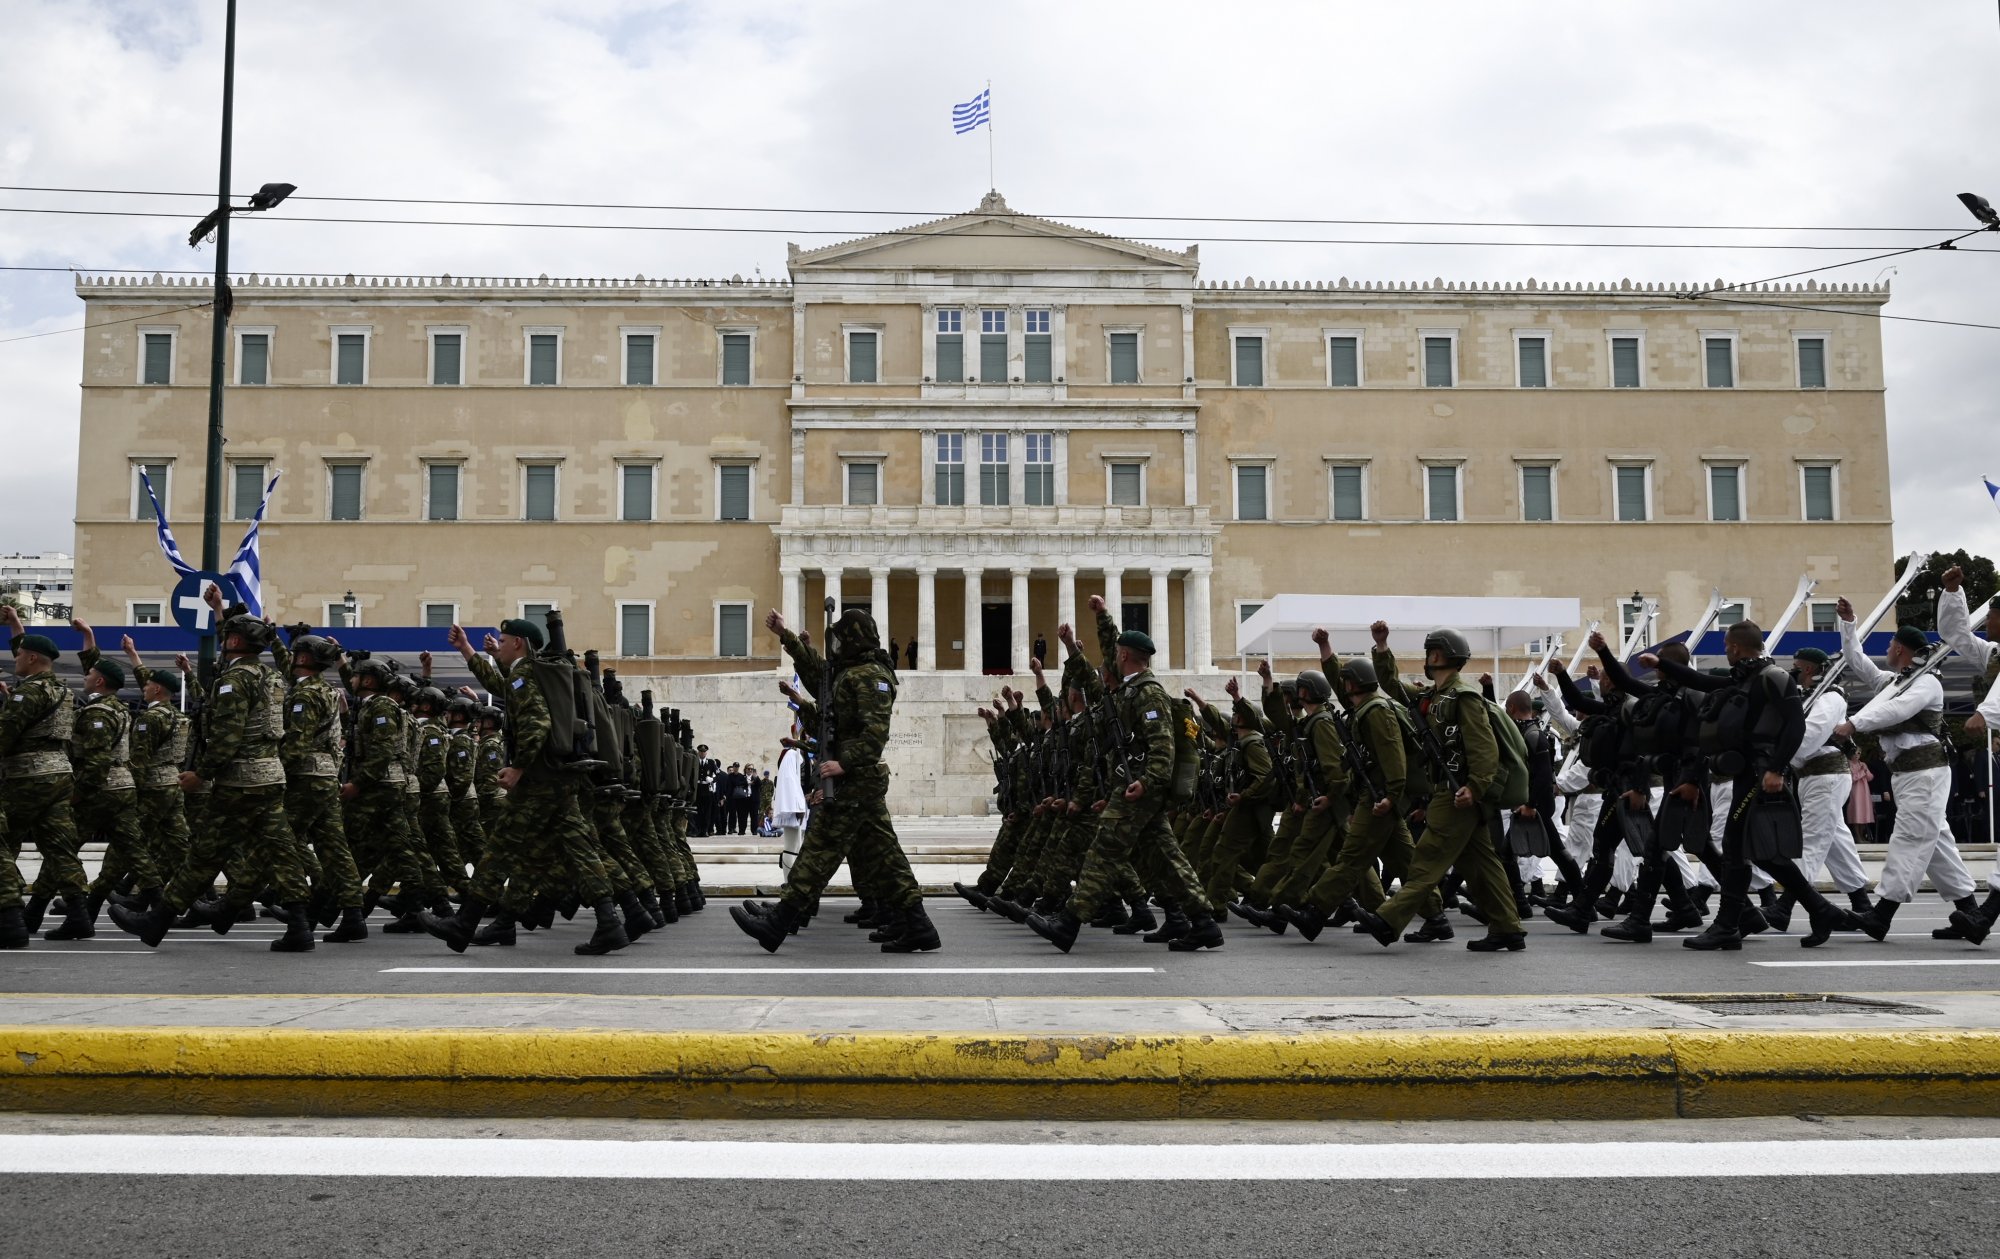 Ολοκληρώθηκε η στρατιωτική παρέλαση στην Αθήνα για την 25η Μαρτίου - Δείτε φωτογραφίες και βίντεο